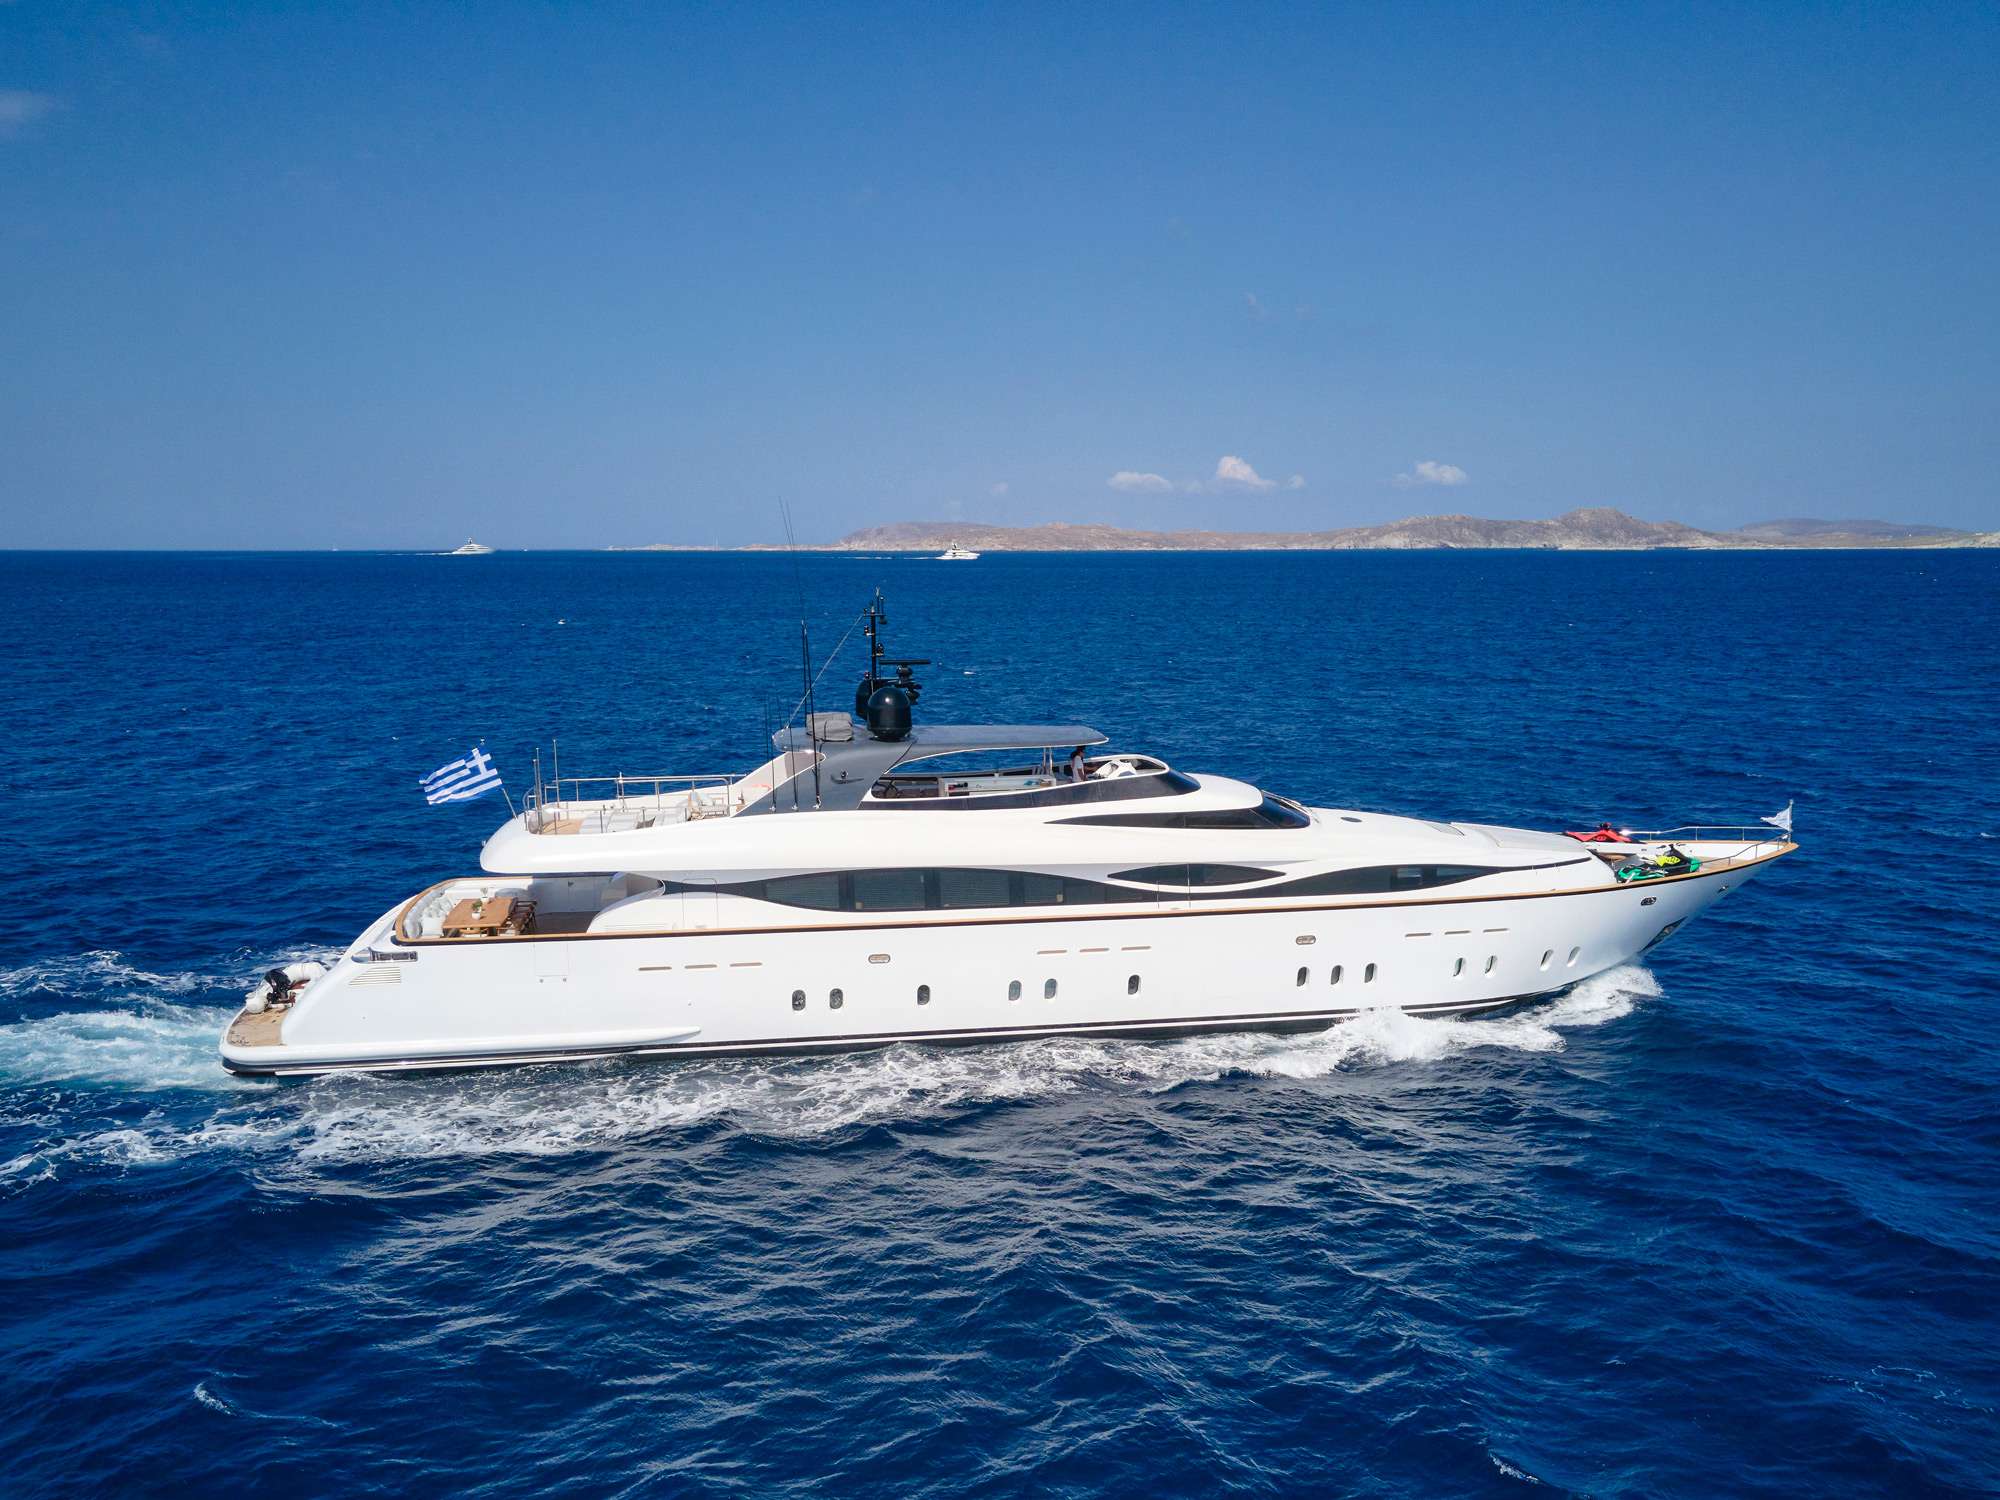 White Knight luxury crewed Maiora 129 motor yacht charter cruising in Greece